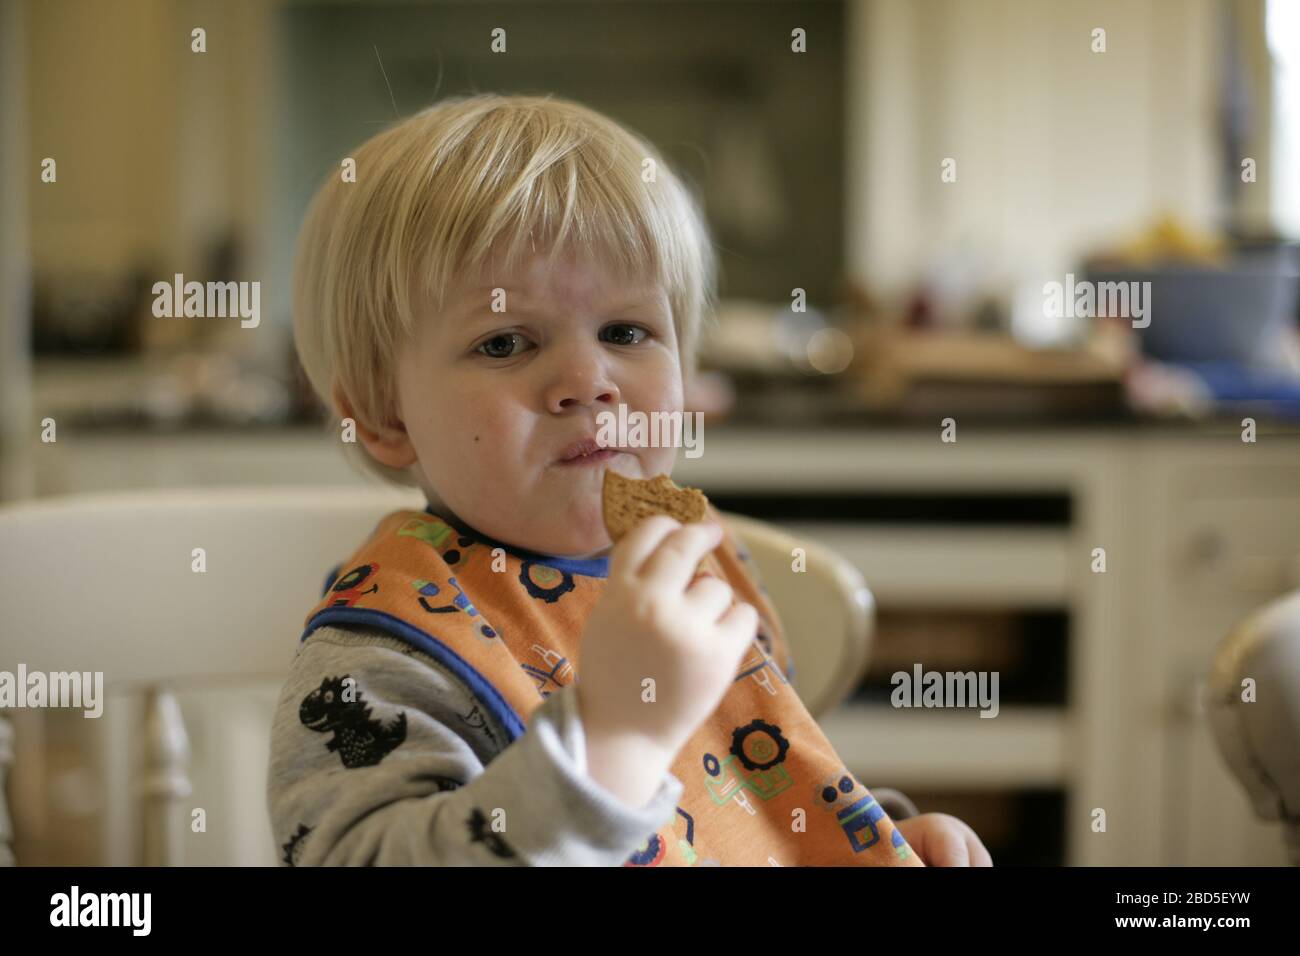 Kleinkind, das selbstgebackene Kekse isst, während Mama während der Zeit der Selbstisolierung während der COVID-19-Coronavirus-Pandemie 2020 in der Küche arbeitet Stockfoto